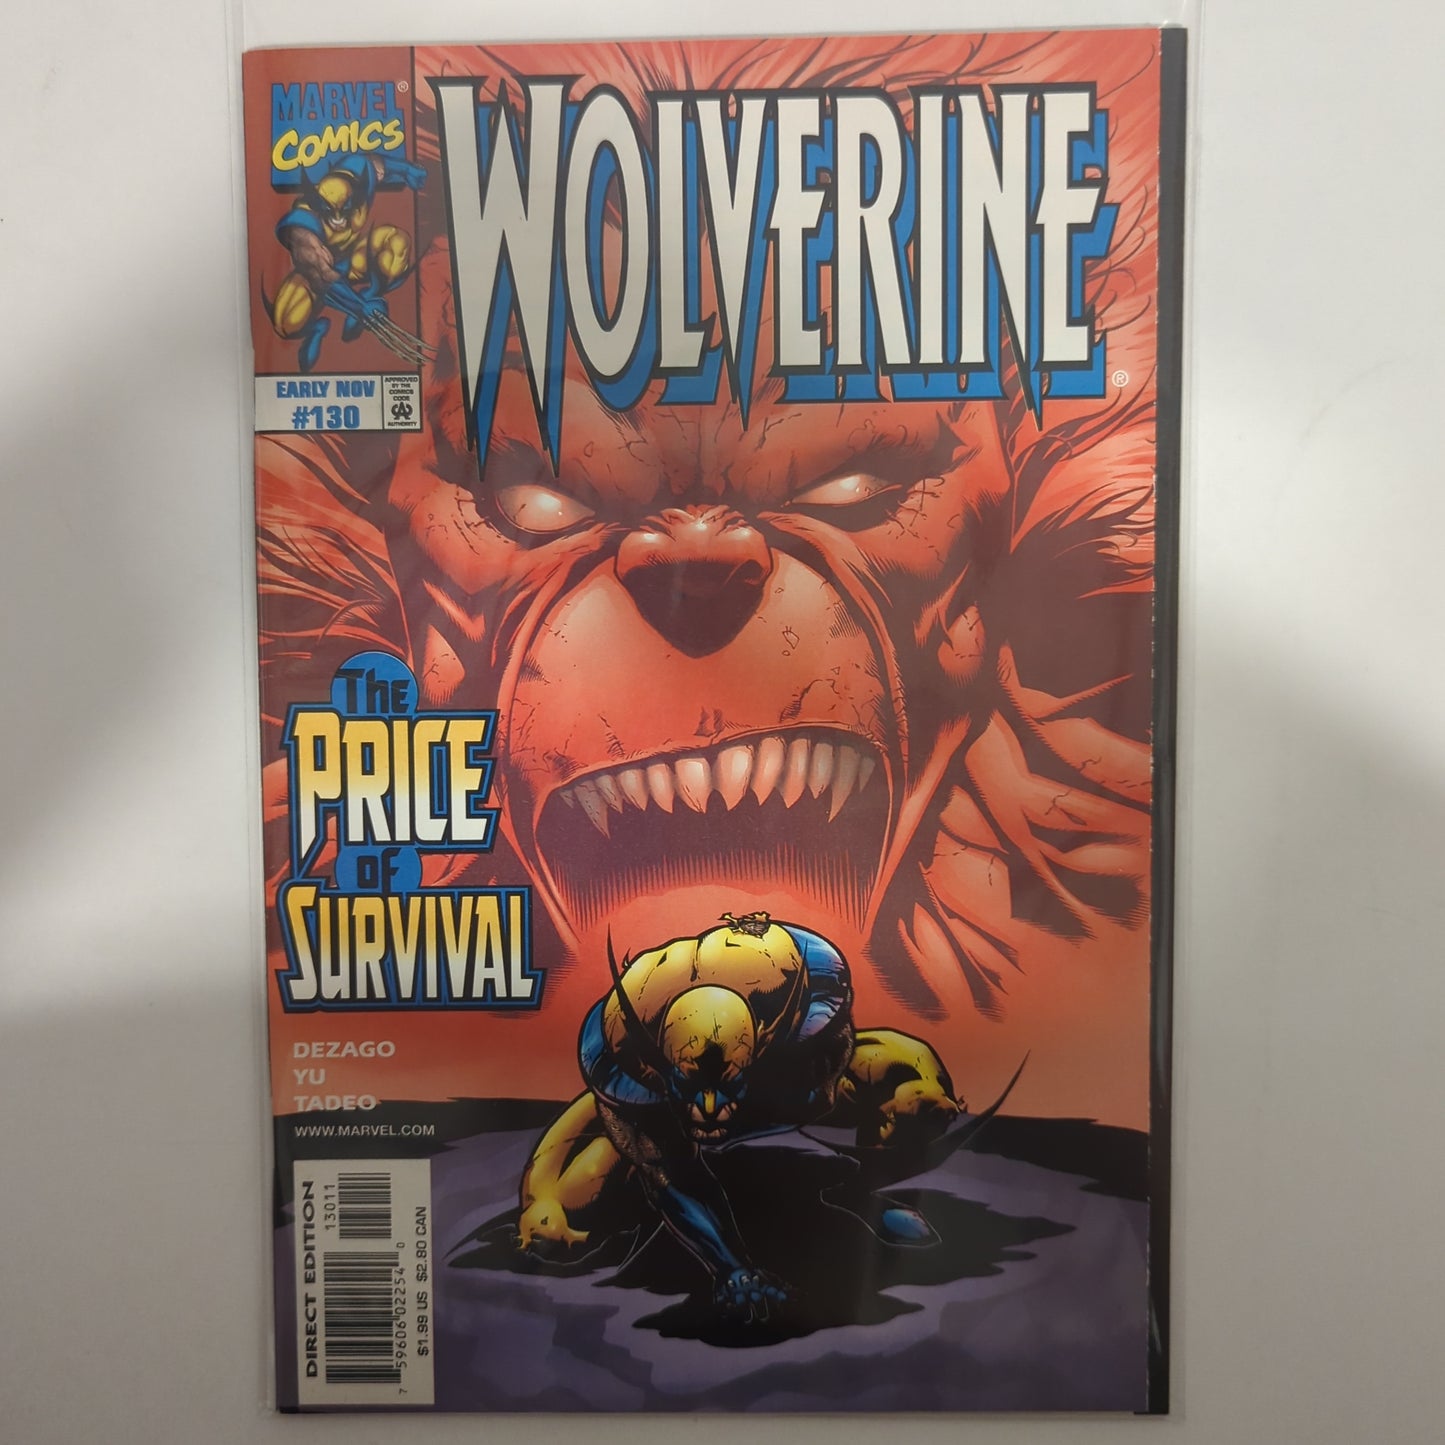 Wolverine #130